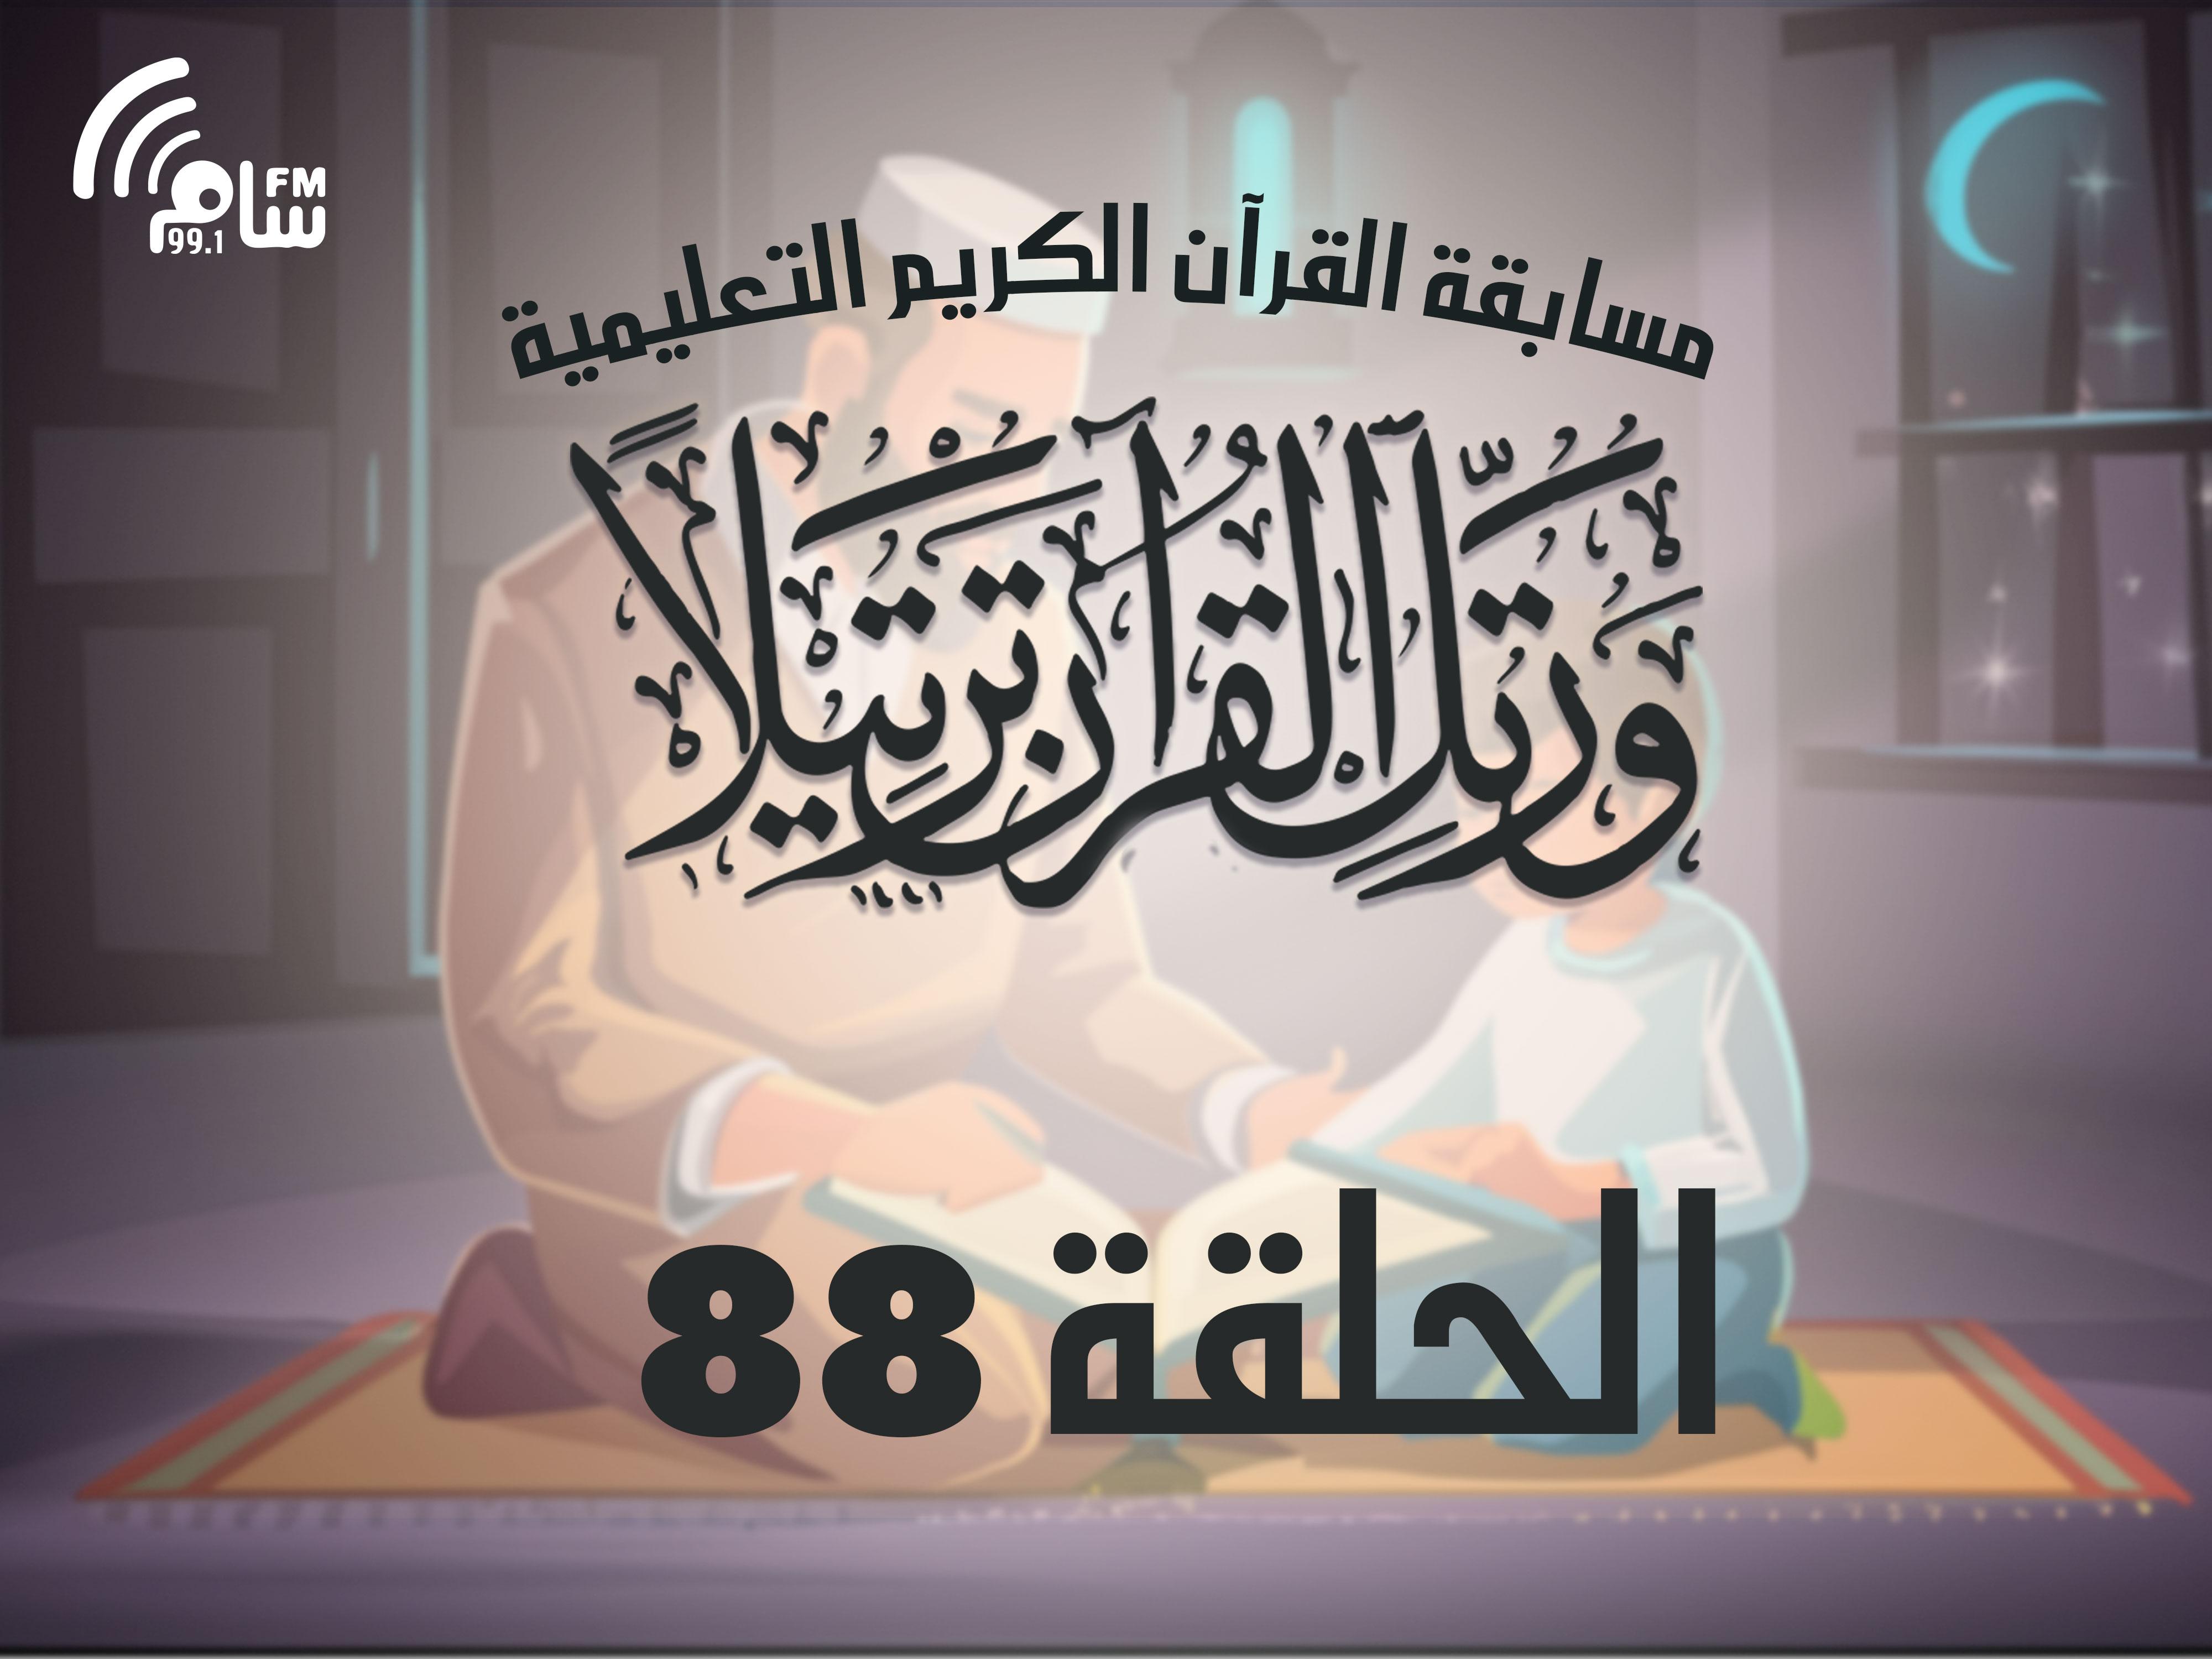 مسابقة القرآن الكريم الحلقة 88 انتاج اذاعة اسام اف ام